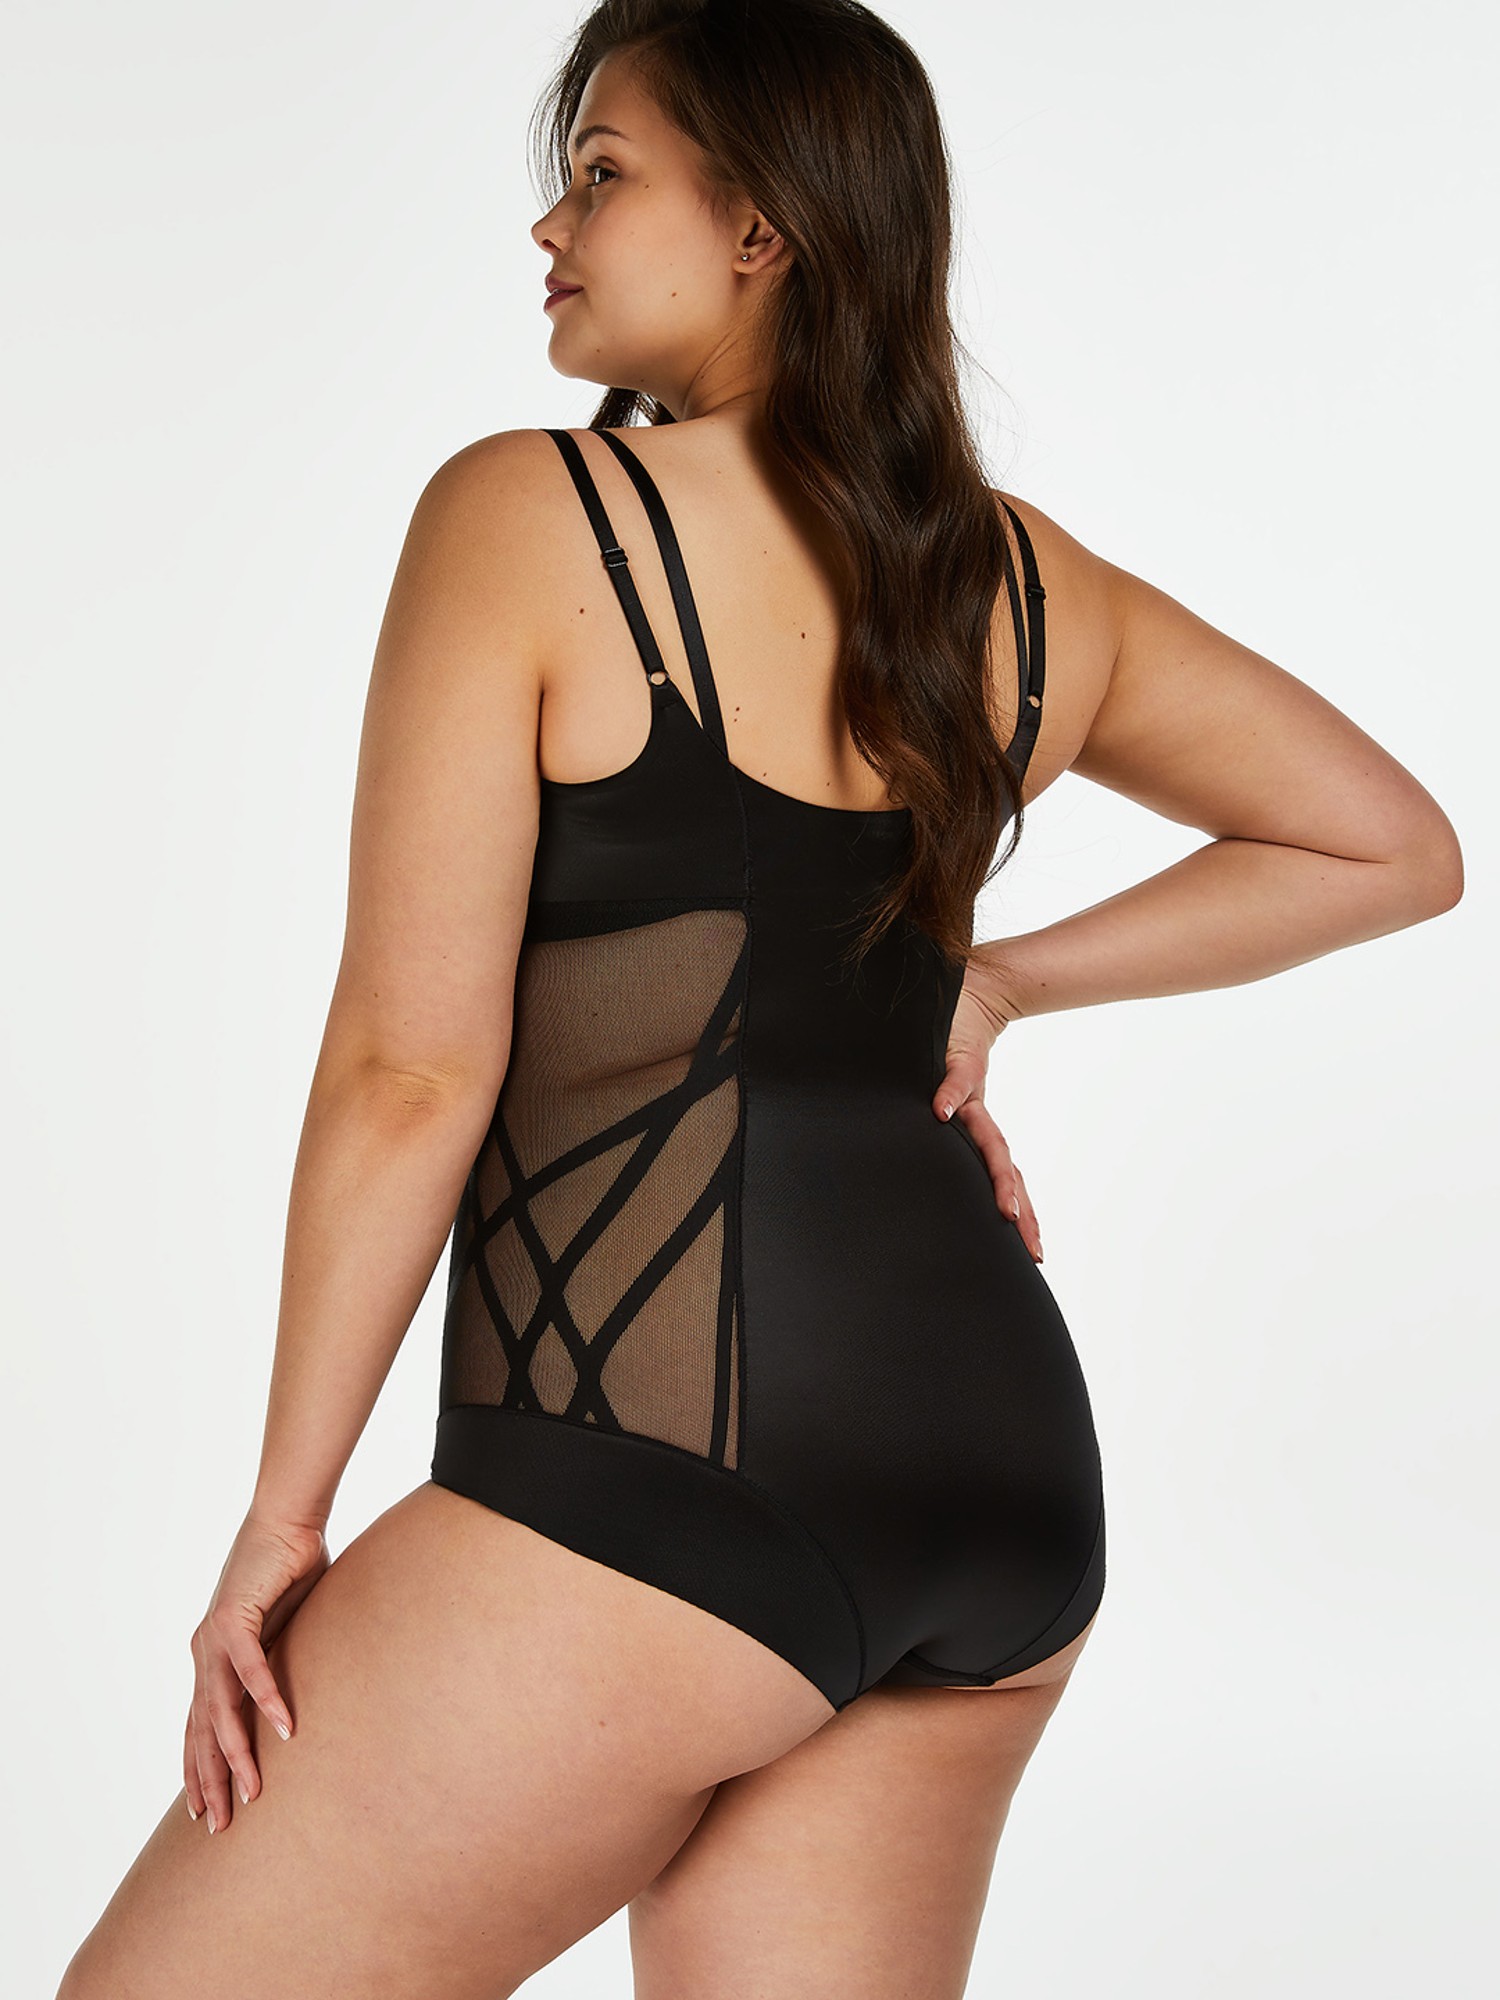 Buy Hunkemoller Black Shaping Bodysuit for Women's Online @ Tata CLiQ